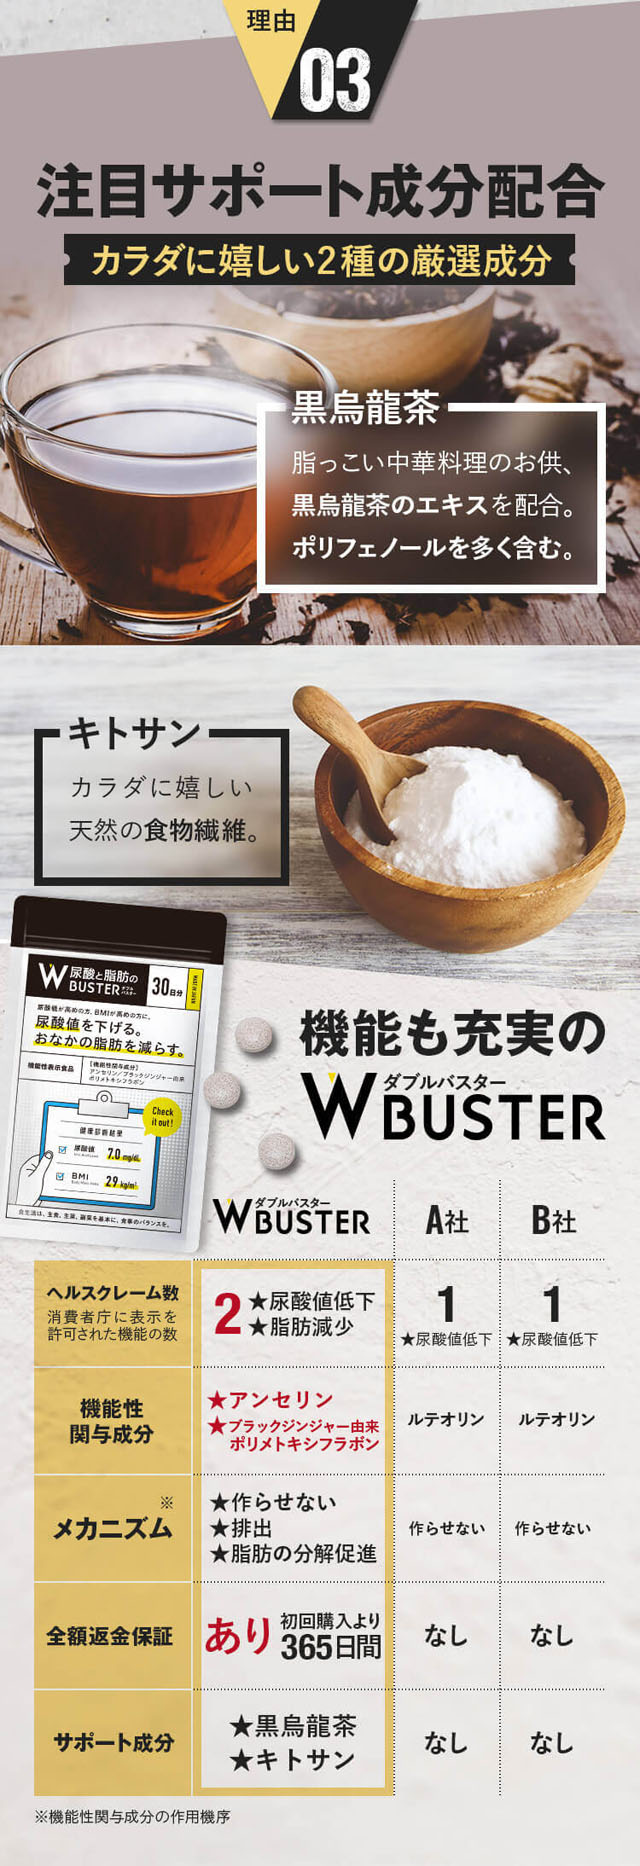 尿酸と脂肪のW Buster(ダブルバスター),特徴,効果